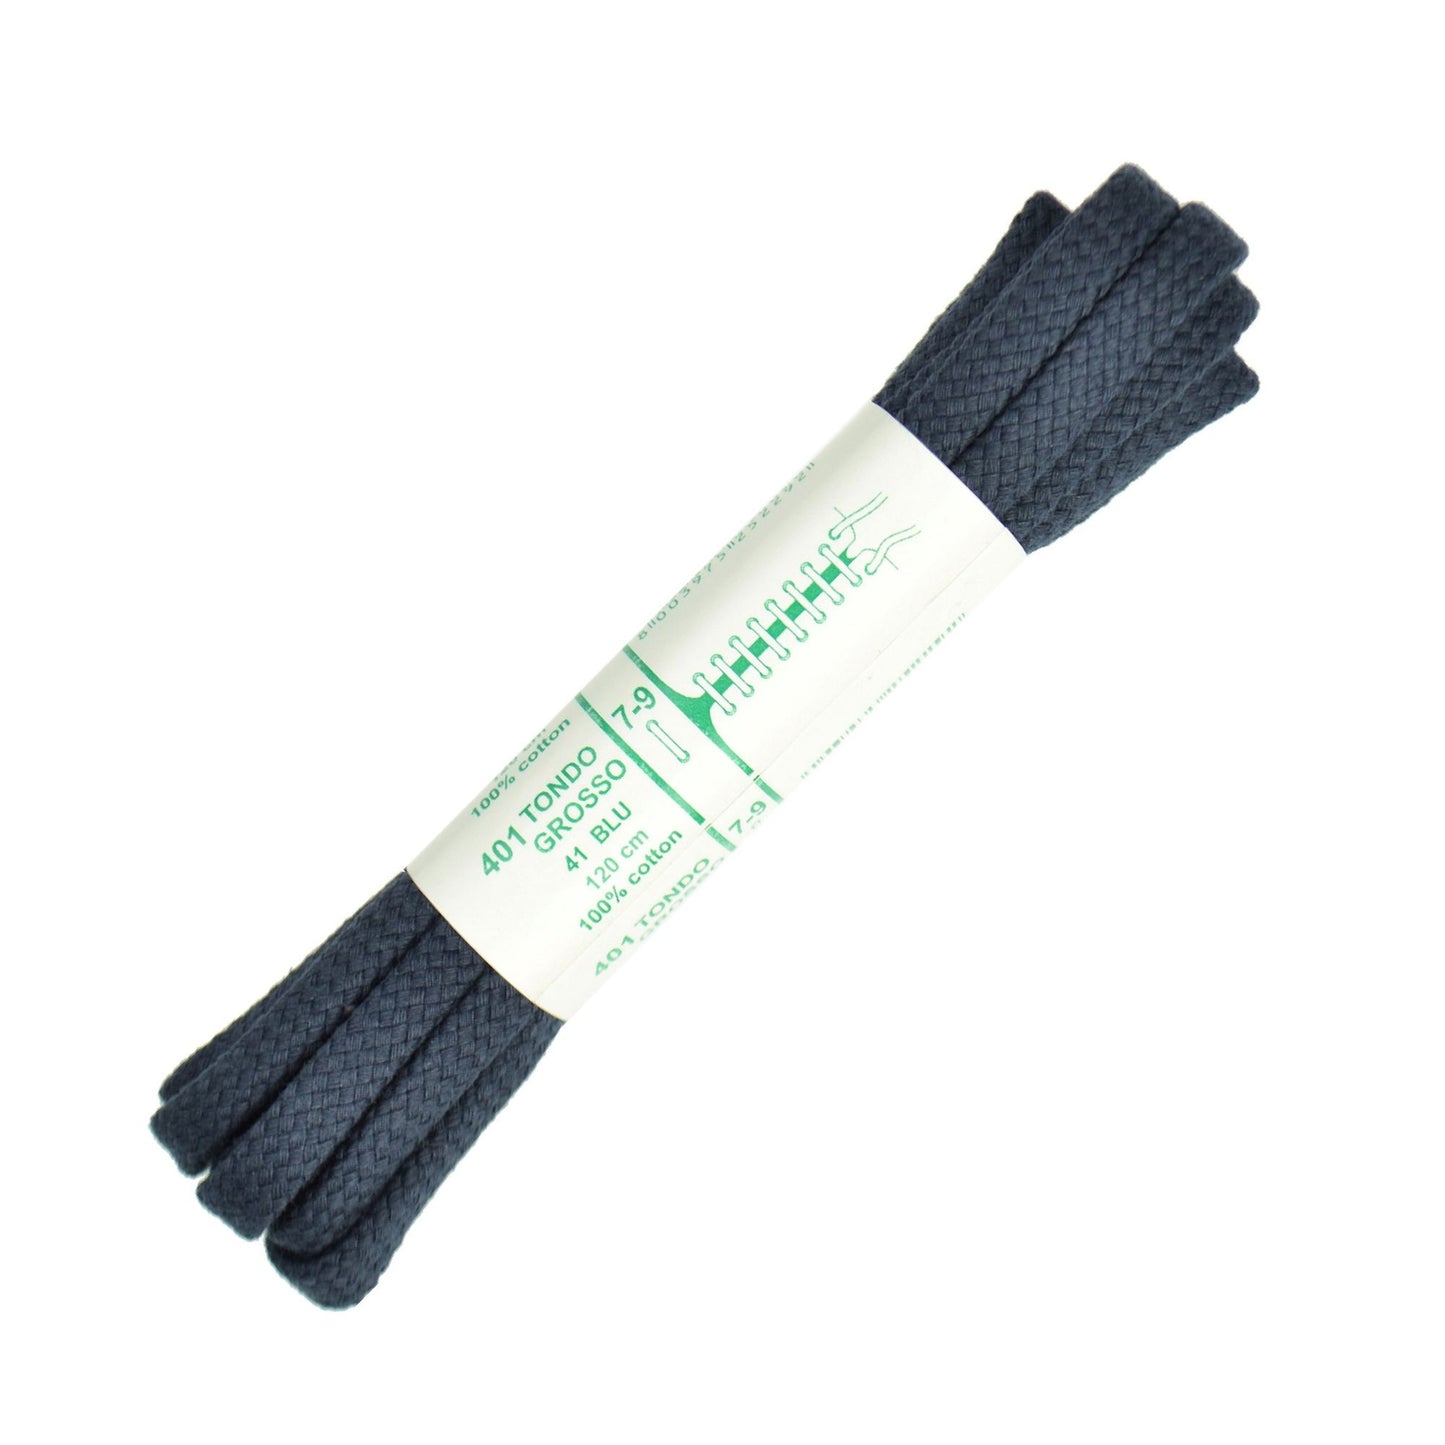 120cm Premium Cord Shoe Laces - Navy Blue 6mm